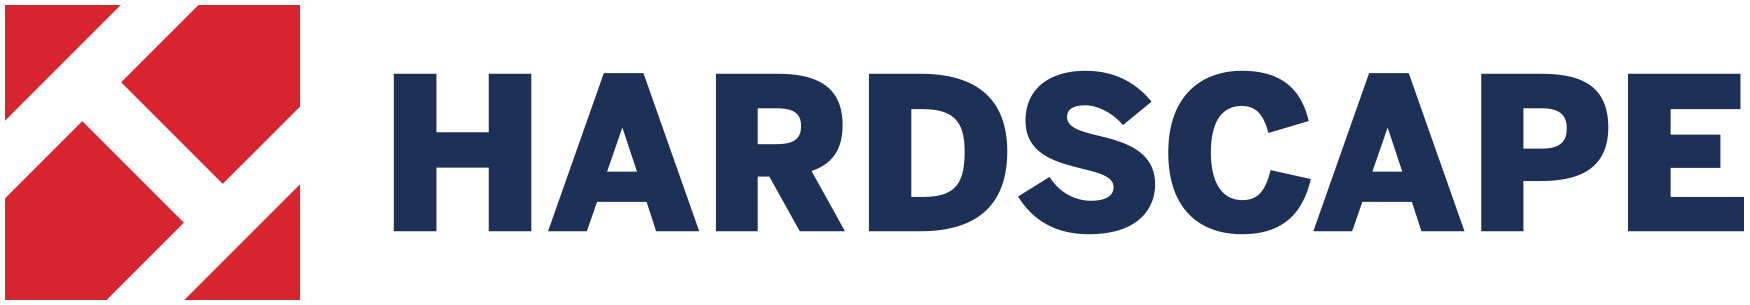 Hardscape Products Ltd Logo